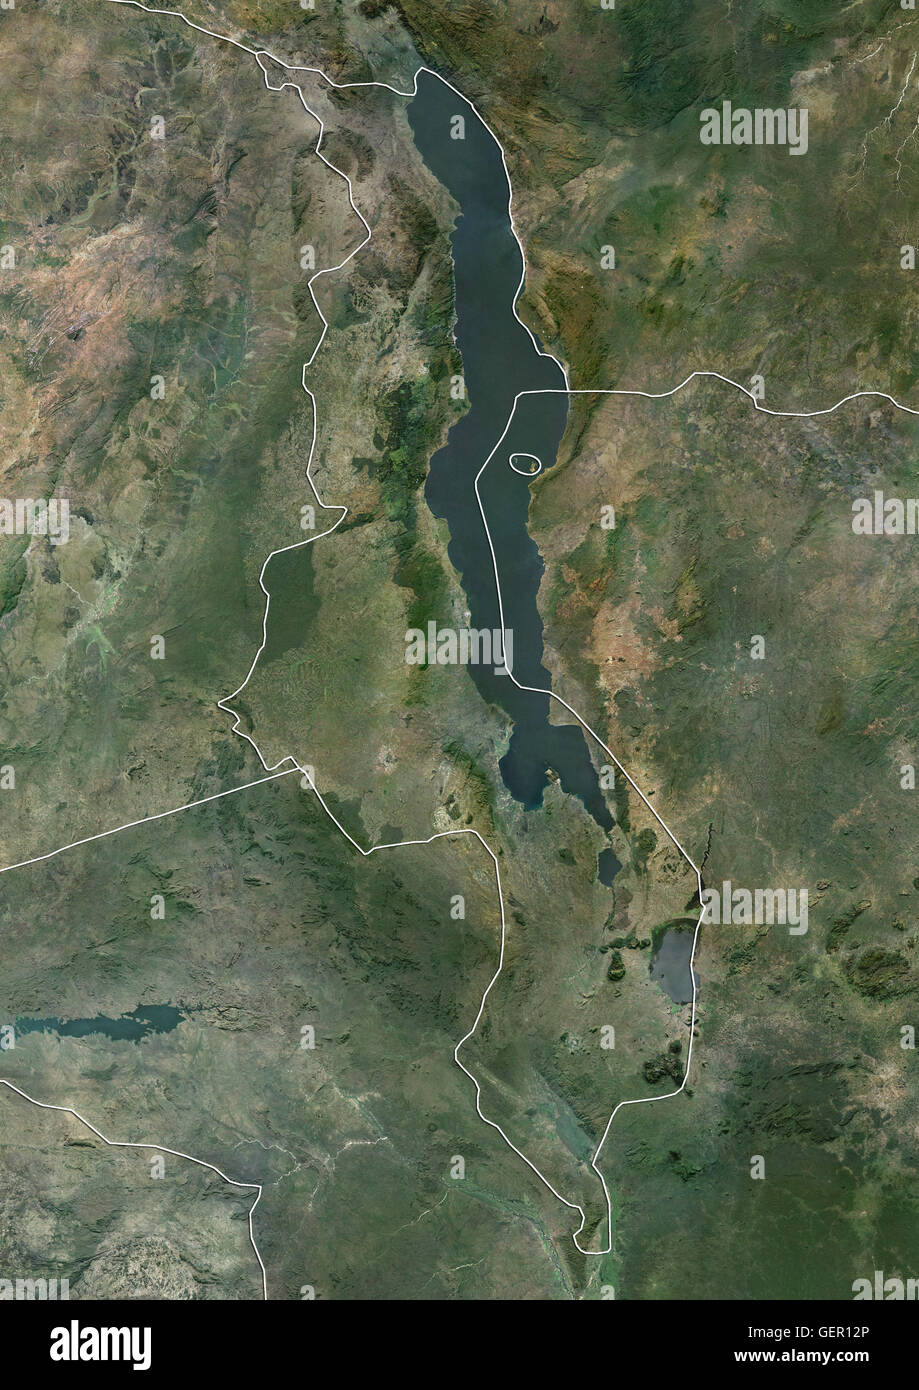 Satellitenansicht von Malawi (mit Ländergrenzen). Dieses Bild wurde aus Daten von Landsat-Satelliten erworben erstellt. Stockfoto